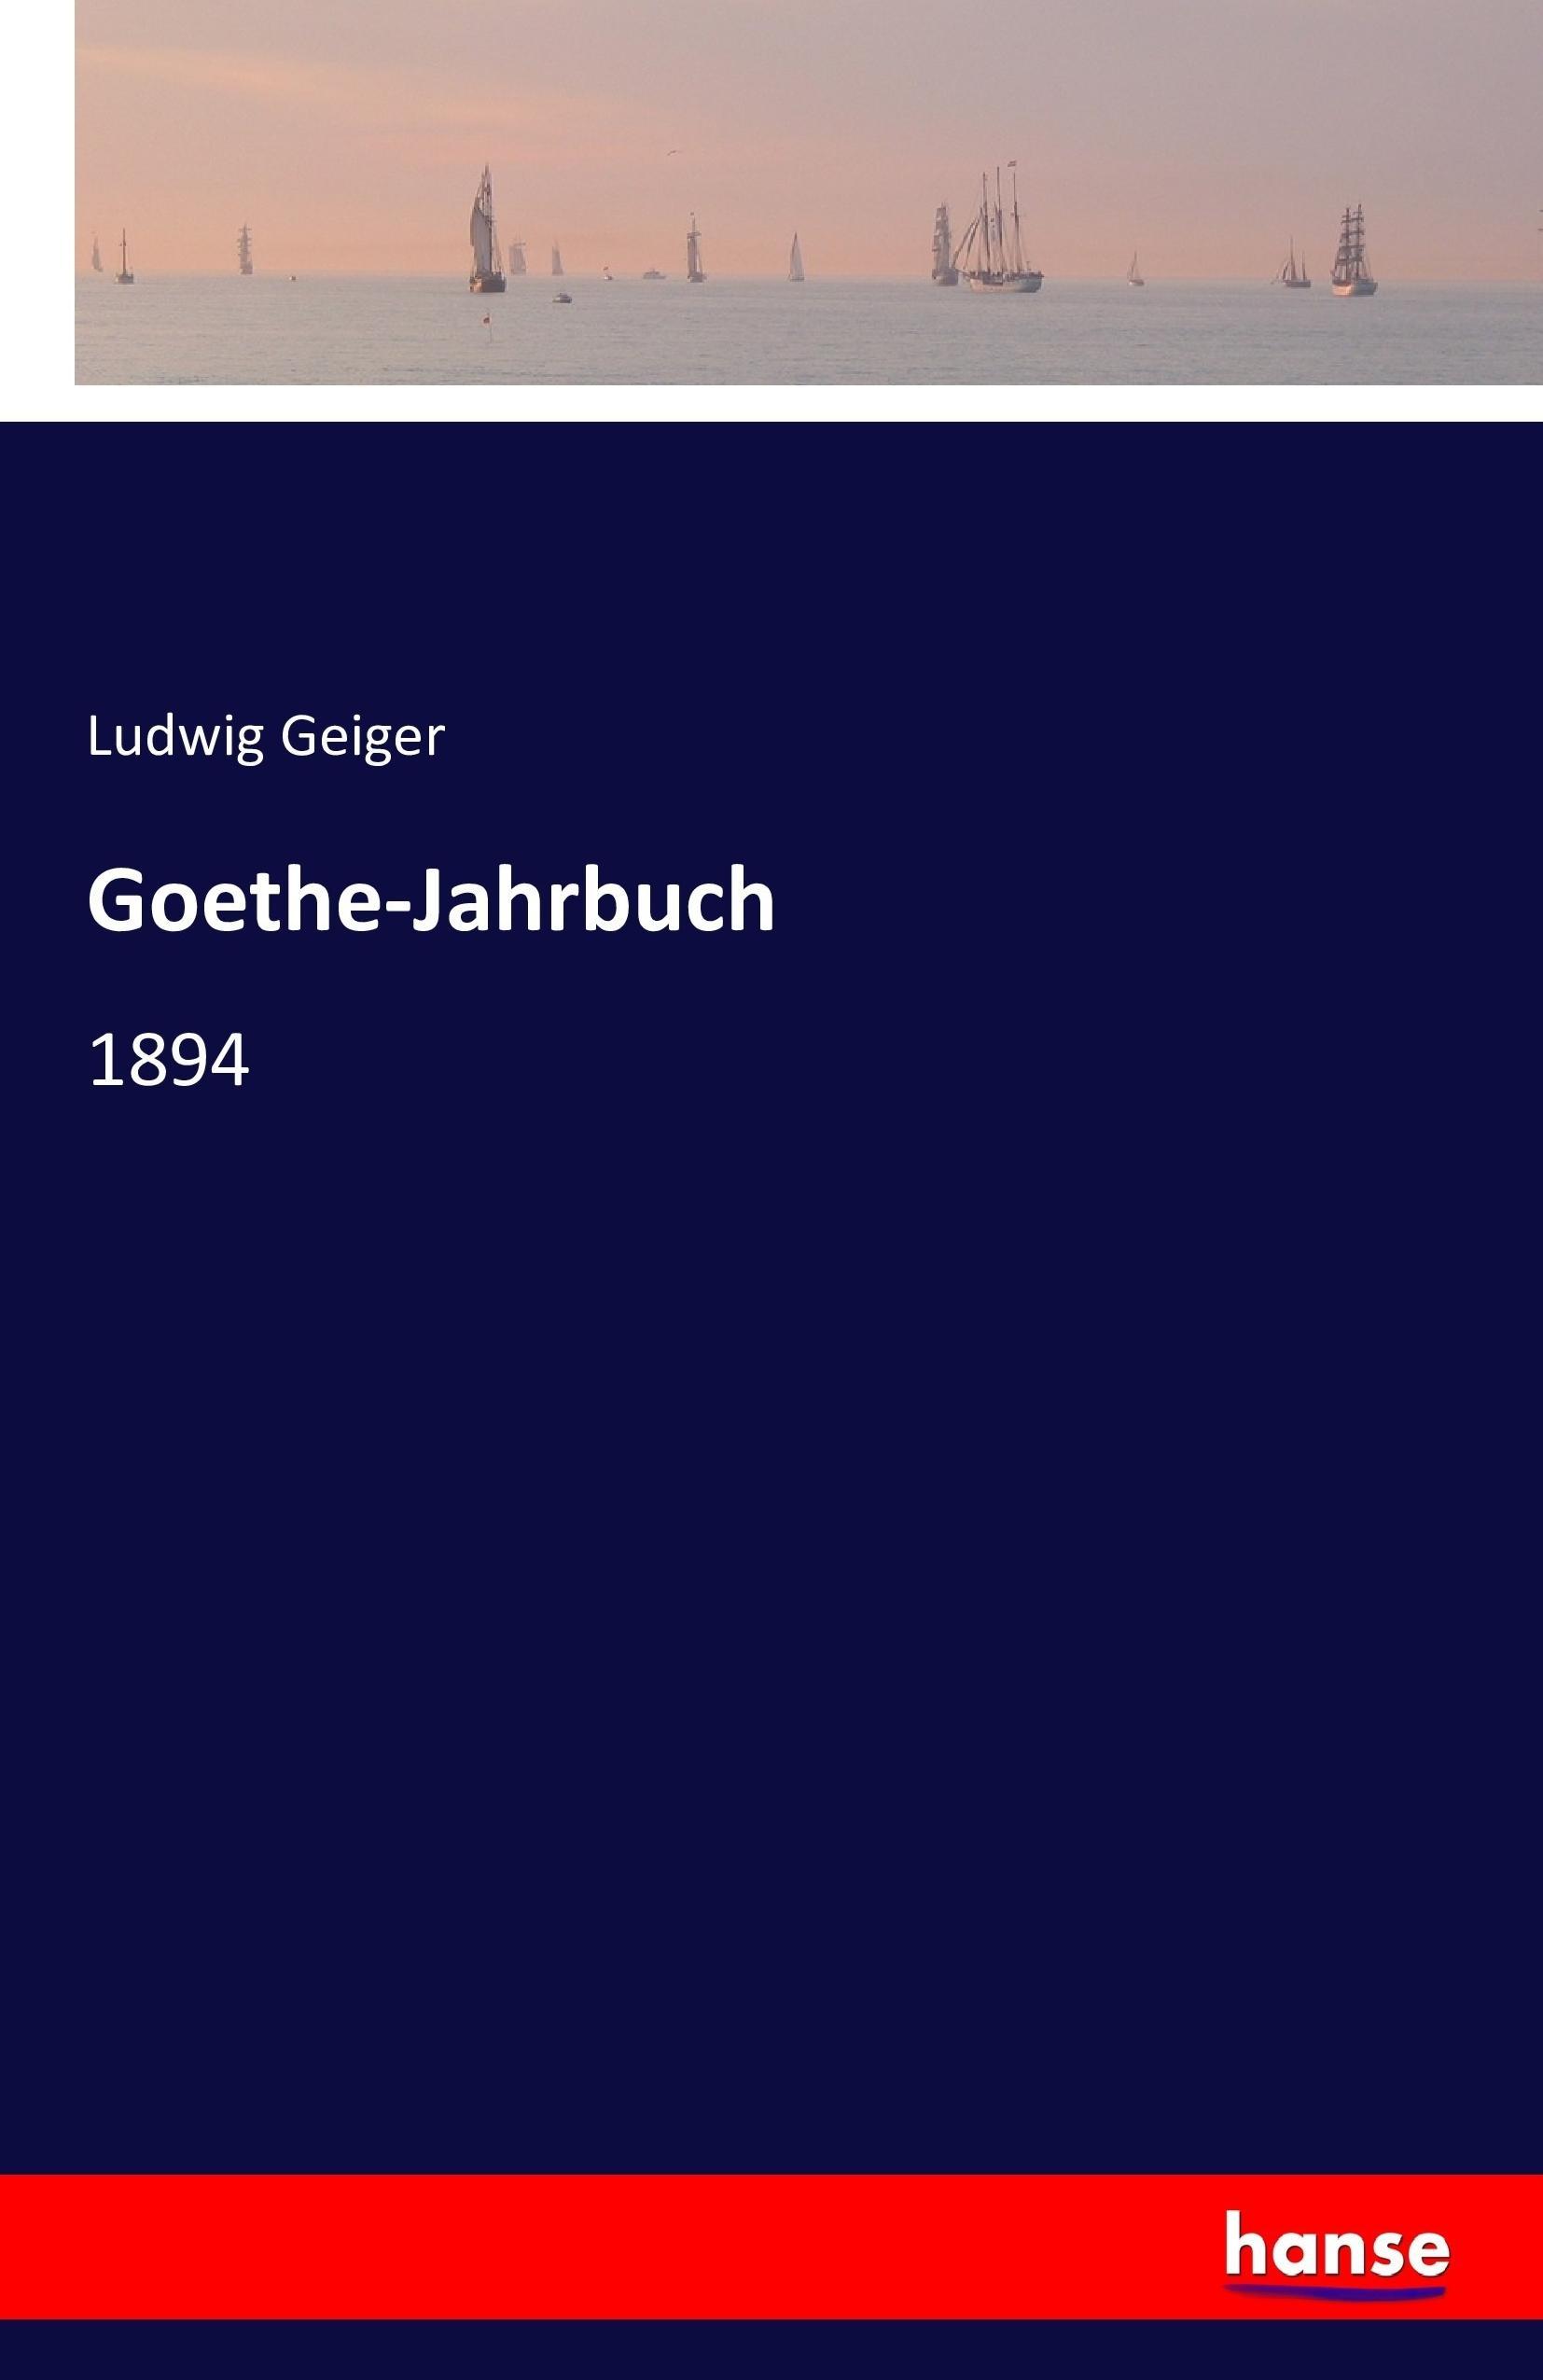 Goethe-Jahrbuch - Geiger, Ludwig